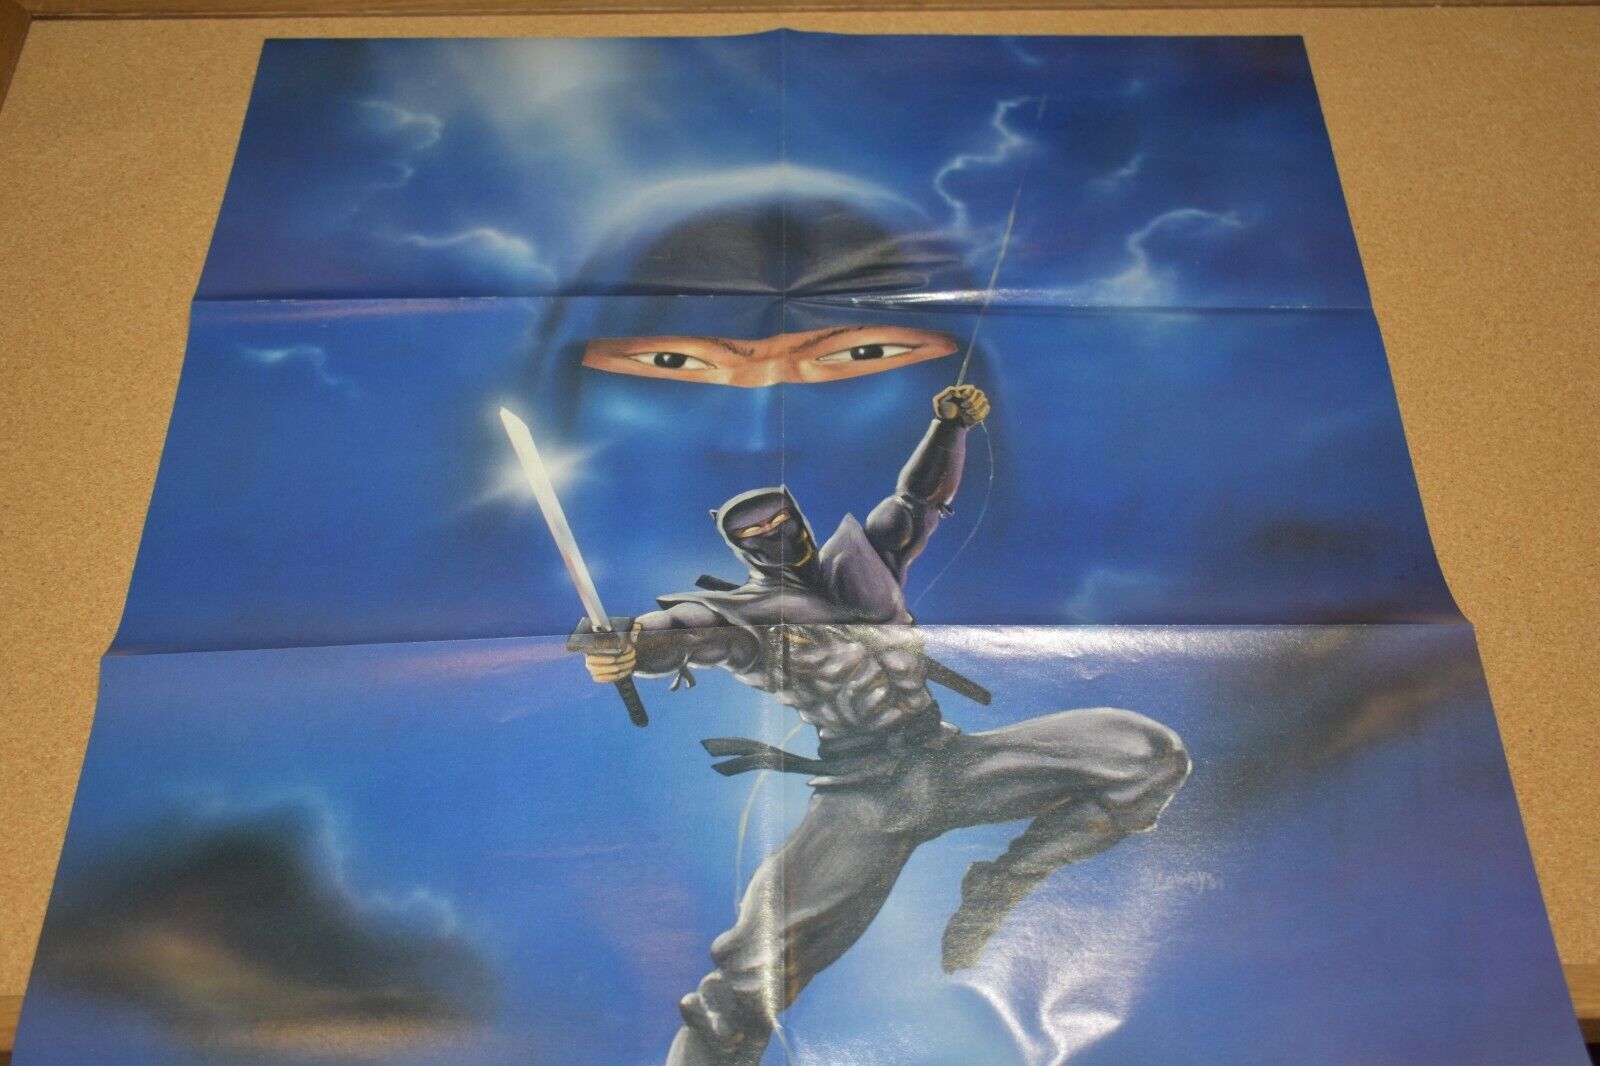 1989 Print Ad Vintage Ninja Warrior Lowry Sword black belt fight jump man